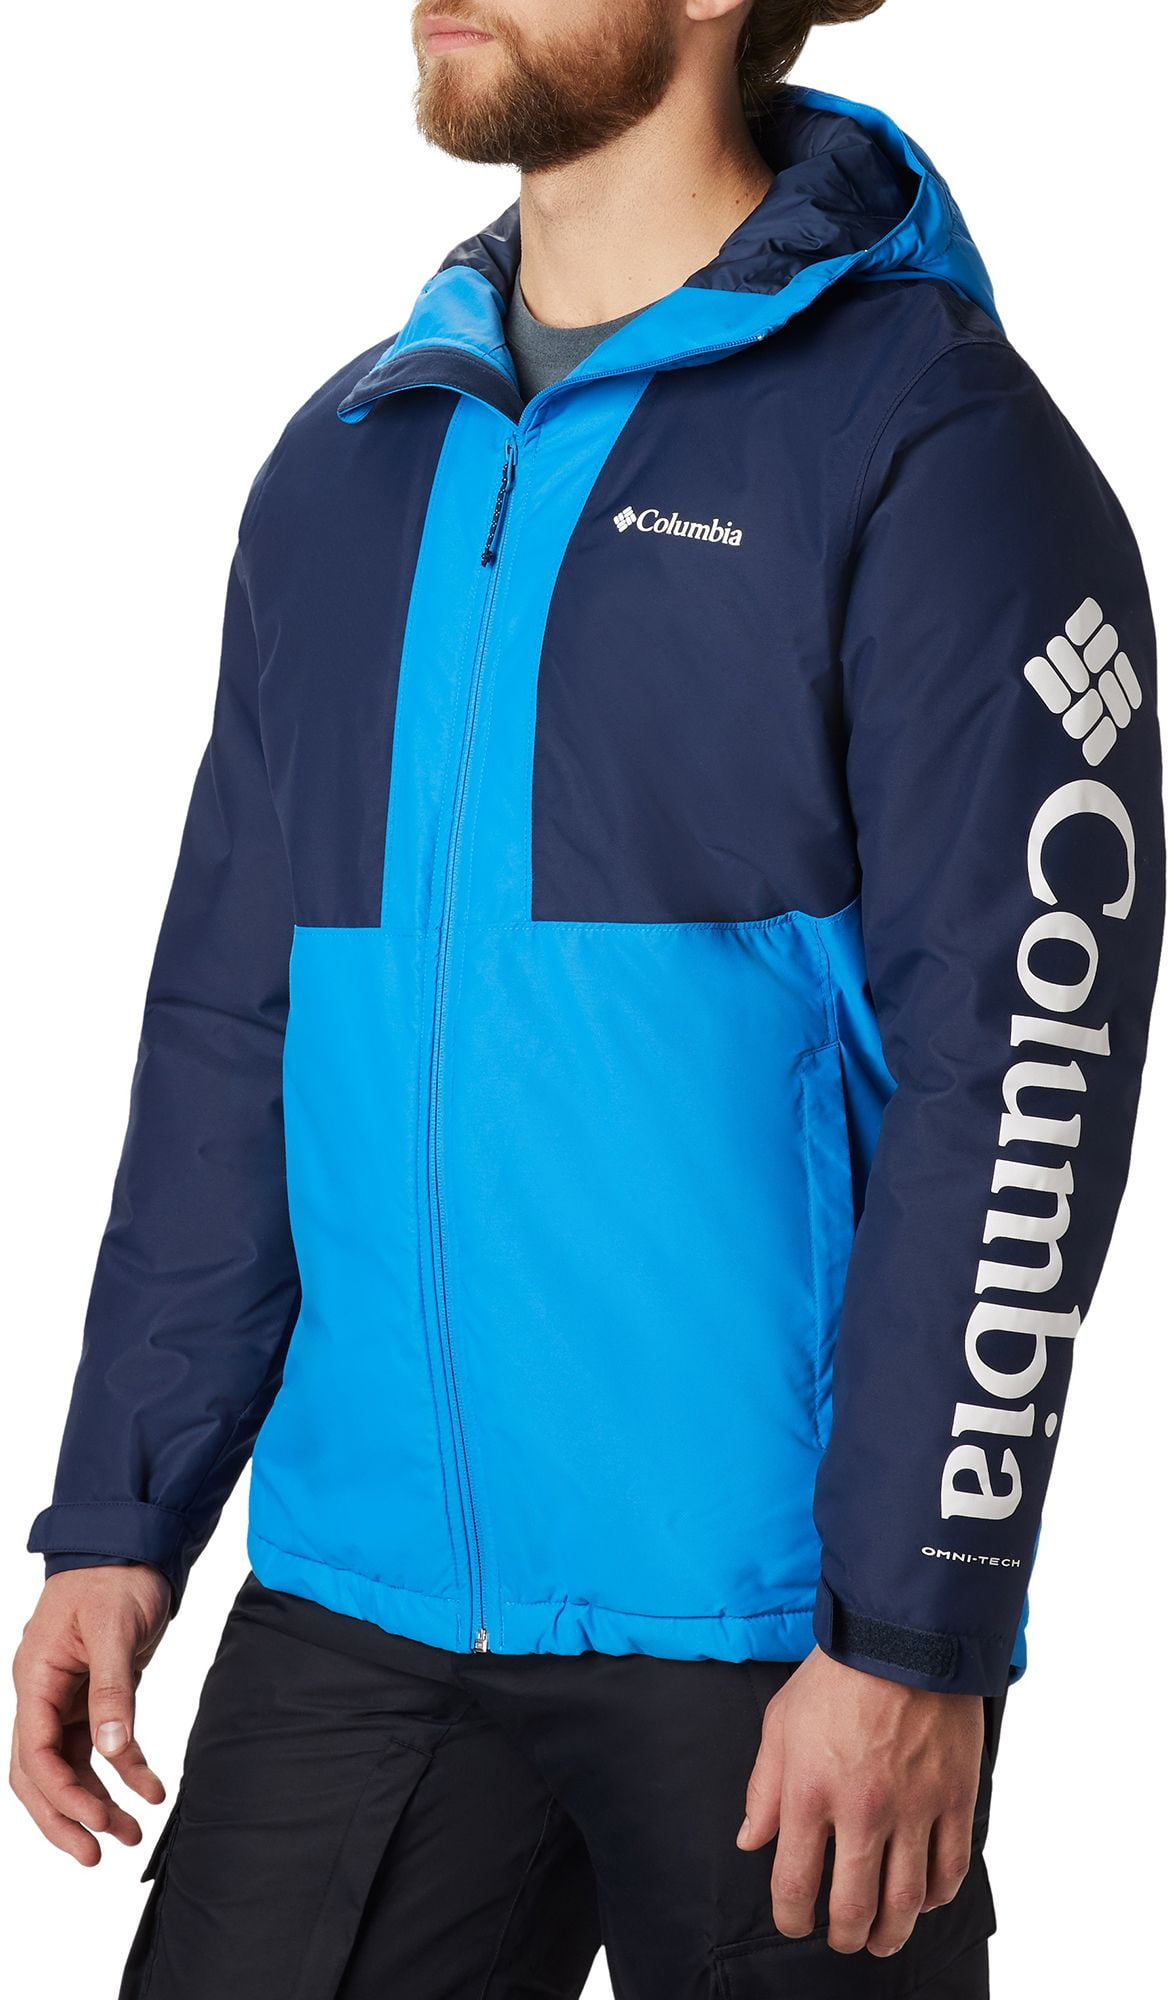 walmart columbia jackets